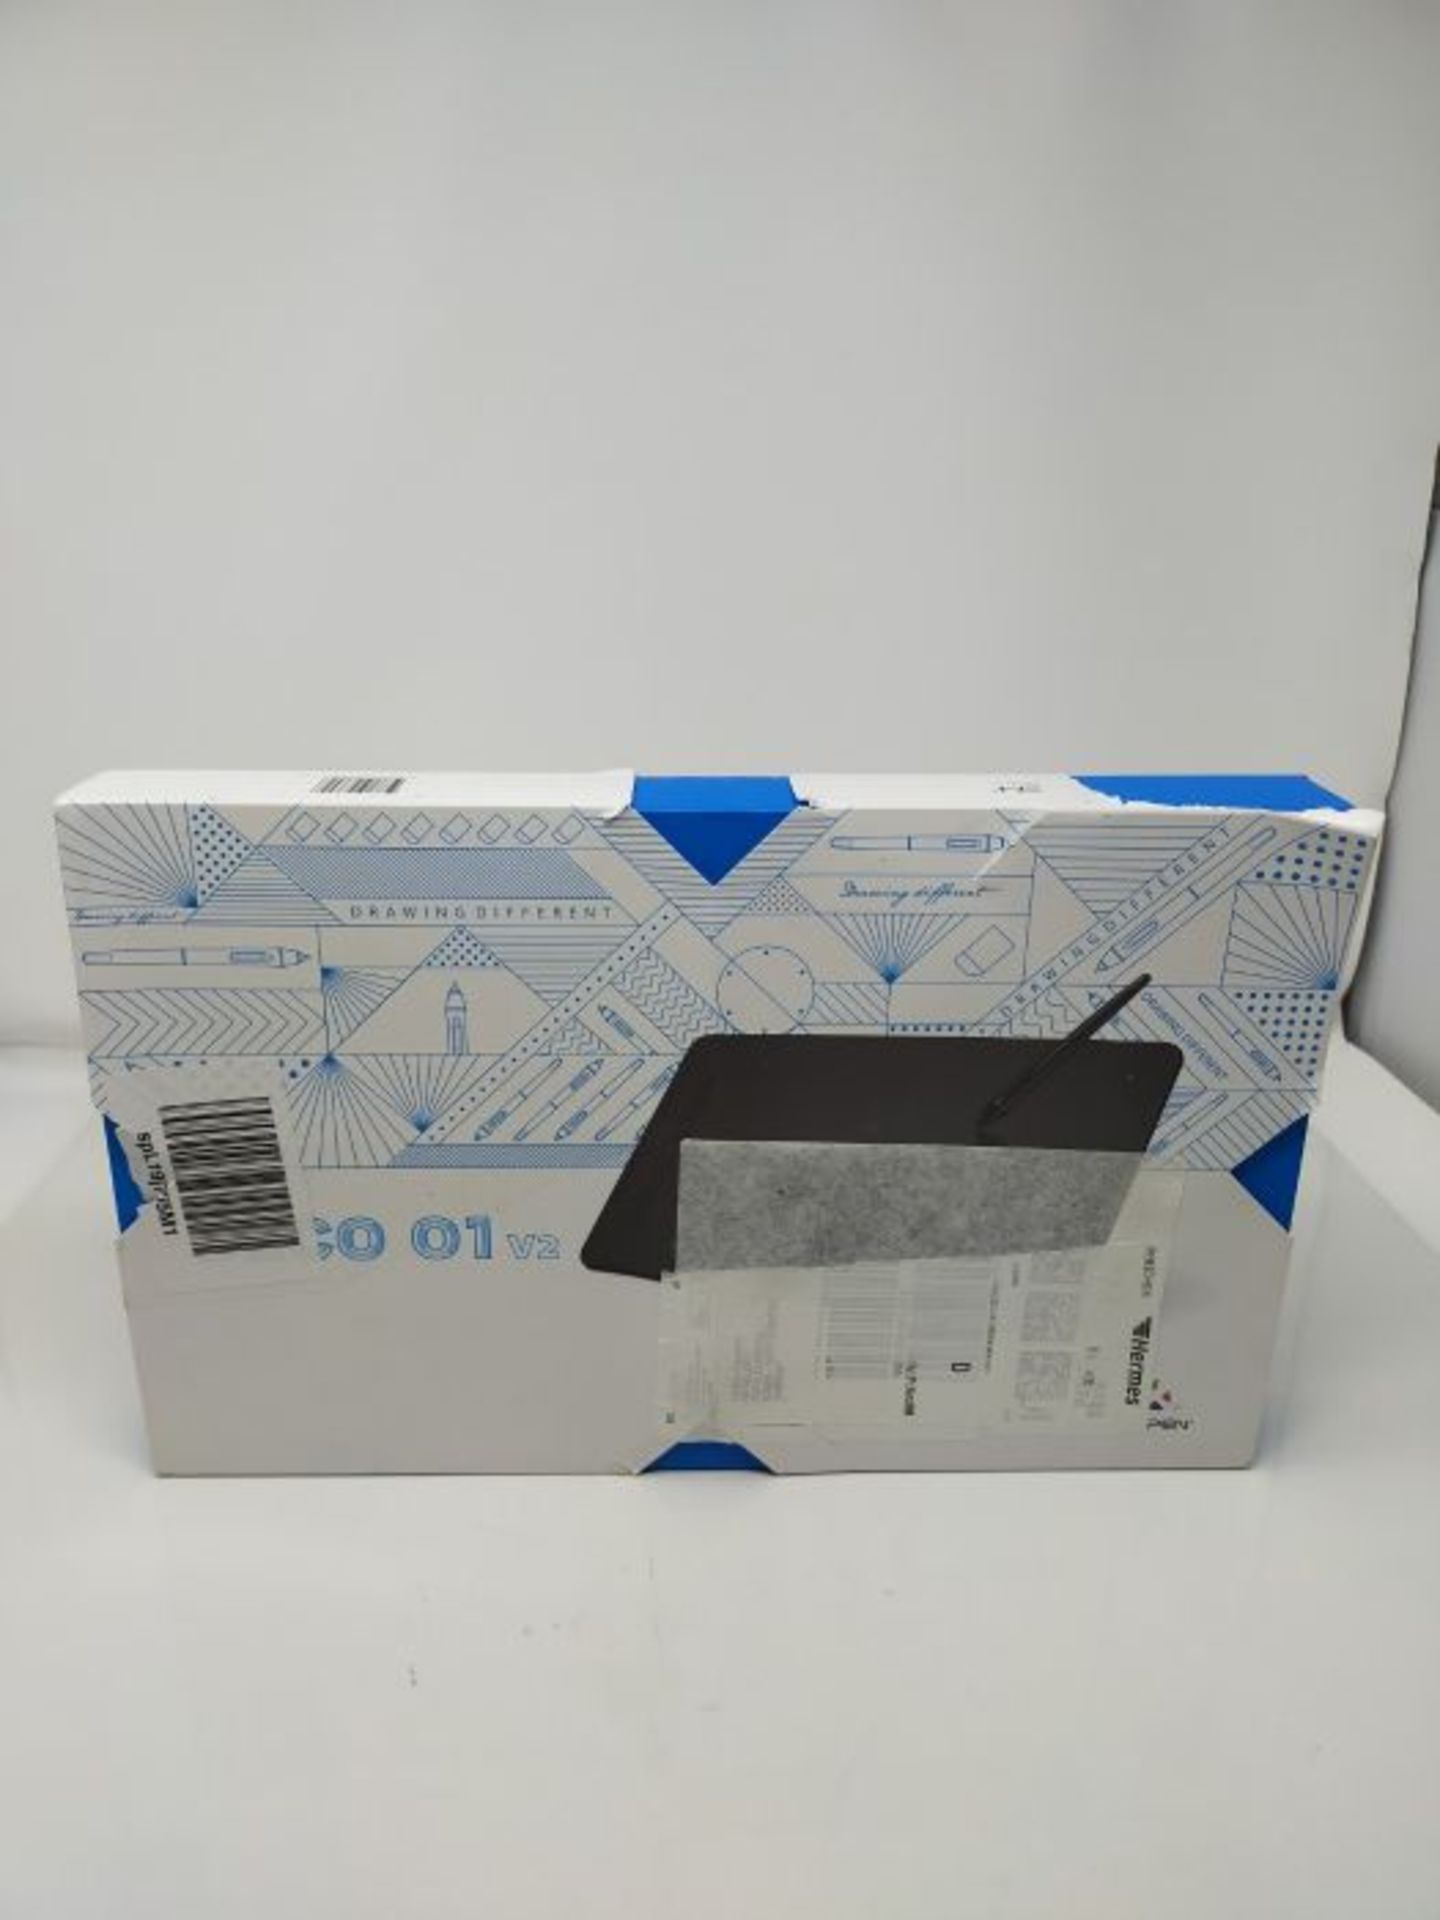 RRP £60.00 XP-PEN Deco 01 V2 Grafiktablett 10x6,25 Zoll Zeichentablett mit Neigungserkennung zum - Image 2 of 3